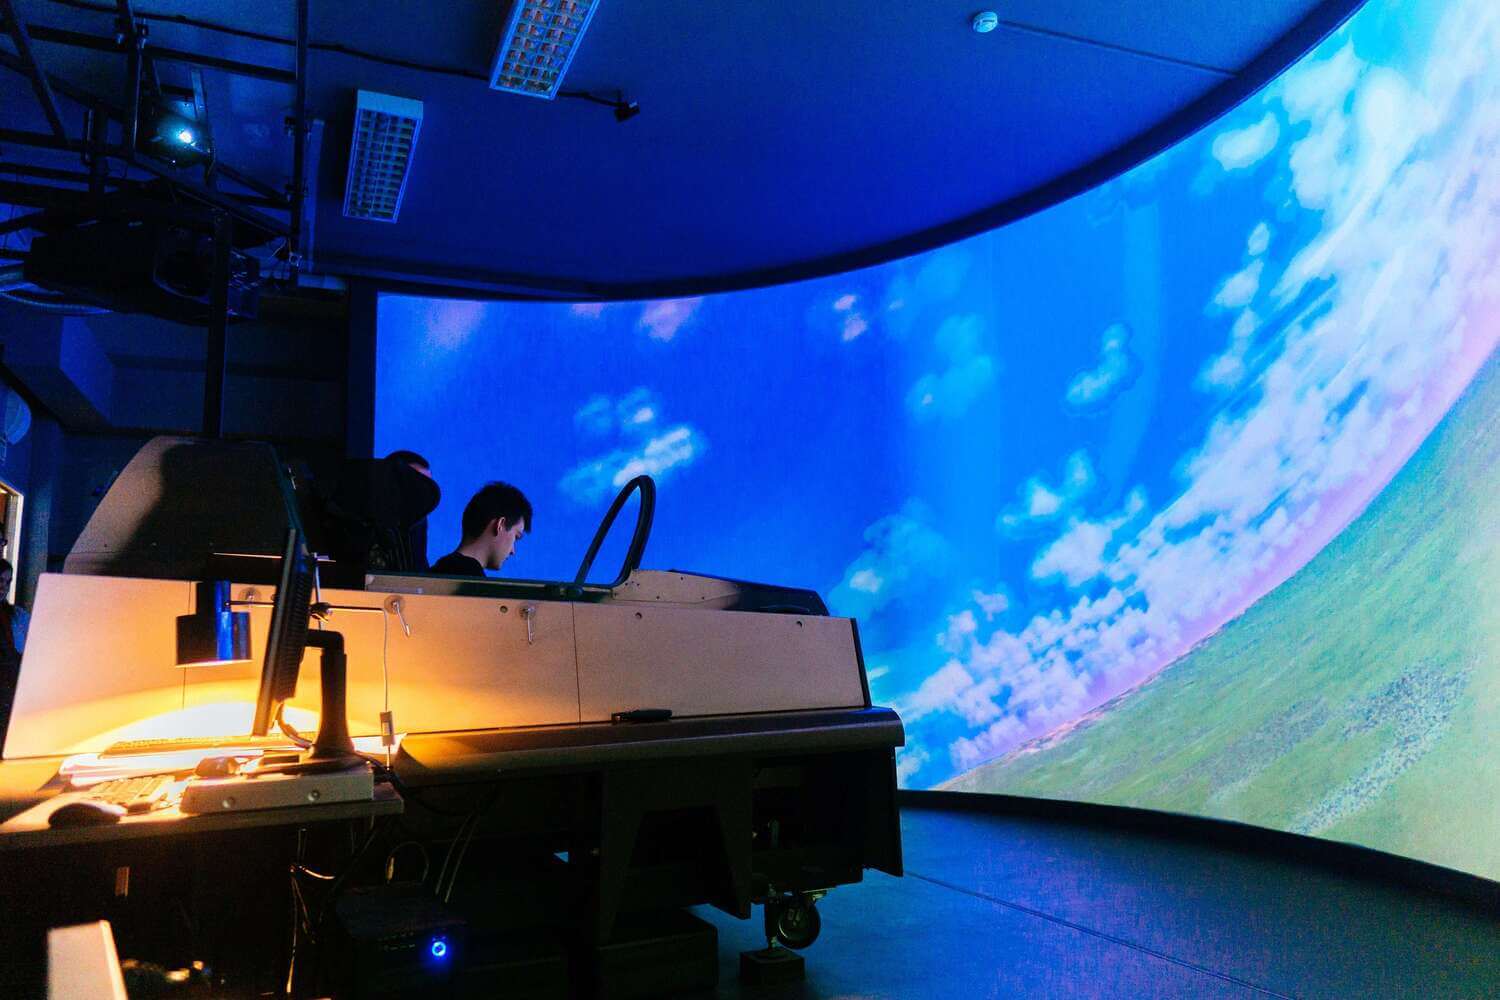 На уникальных подвижных пилотажных стендах лаборатории «Пилотажные стенды и система «самолёт-лётчик» можно совершить виртуальный полёт, овладеть начальными навыками пилотирования, попробовать себя в роли пилота воздушного судна.